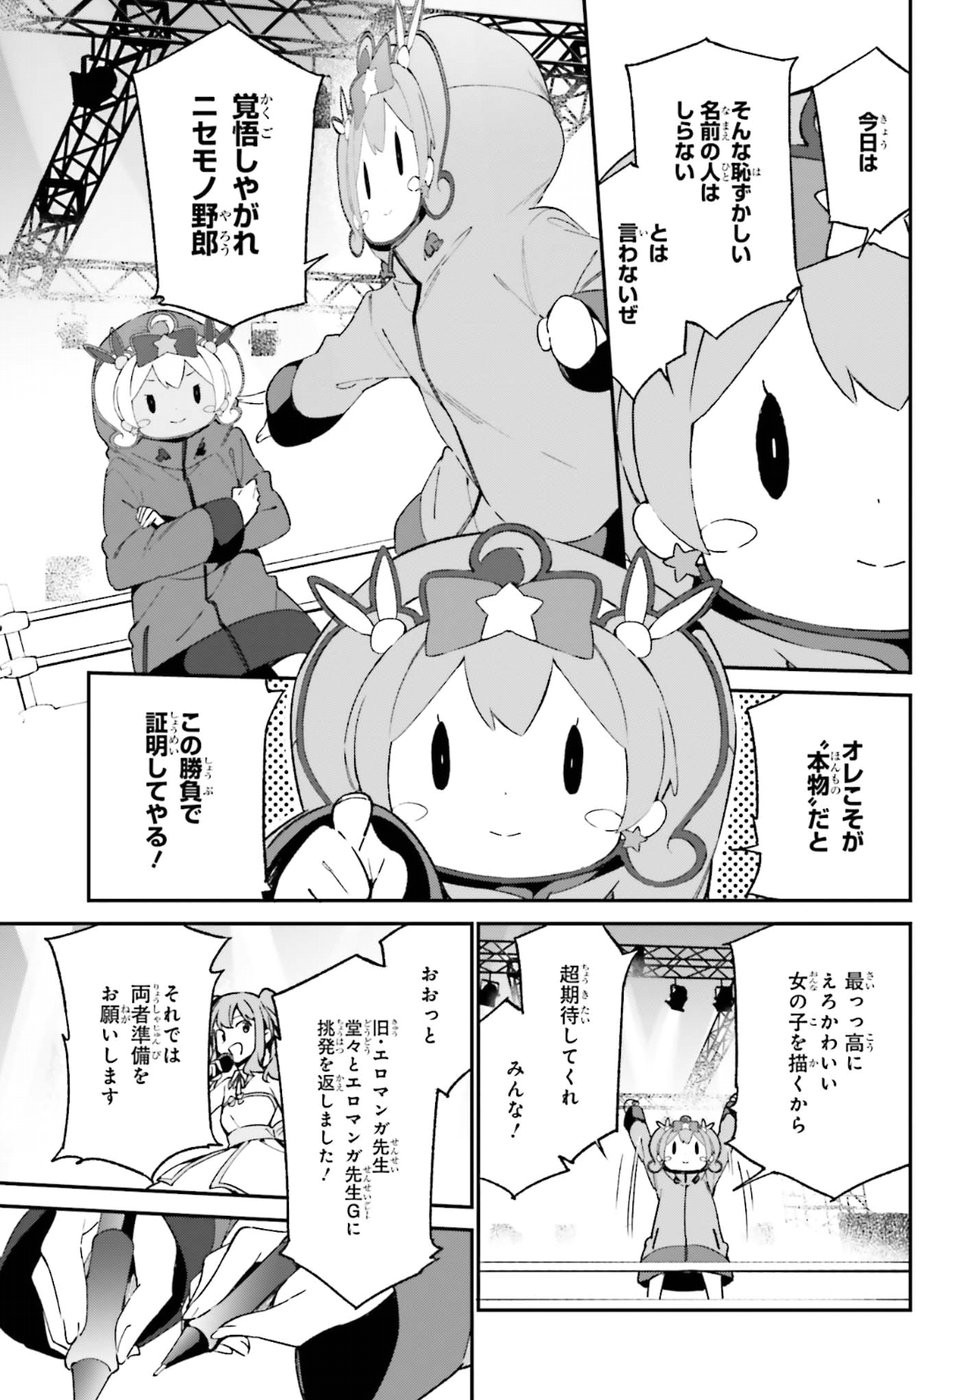 Ero Manga Sensei - Chapter 43 - Page 17